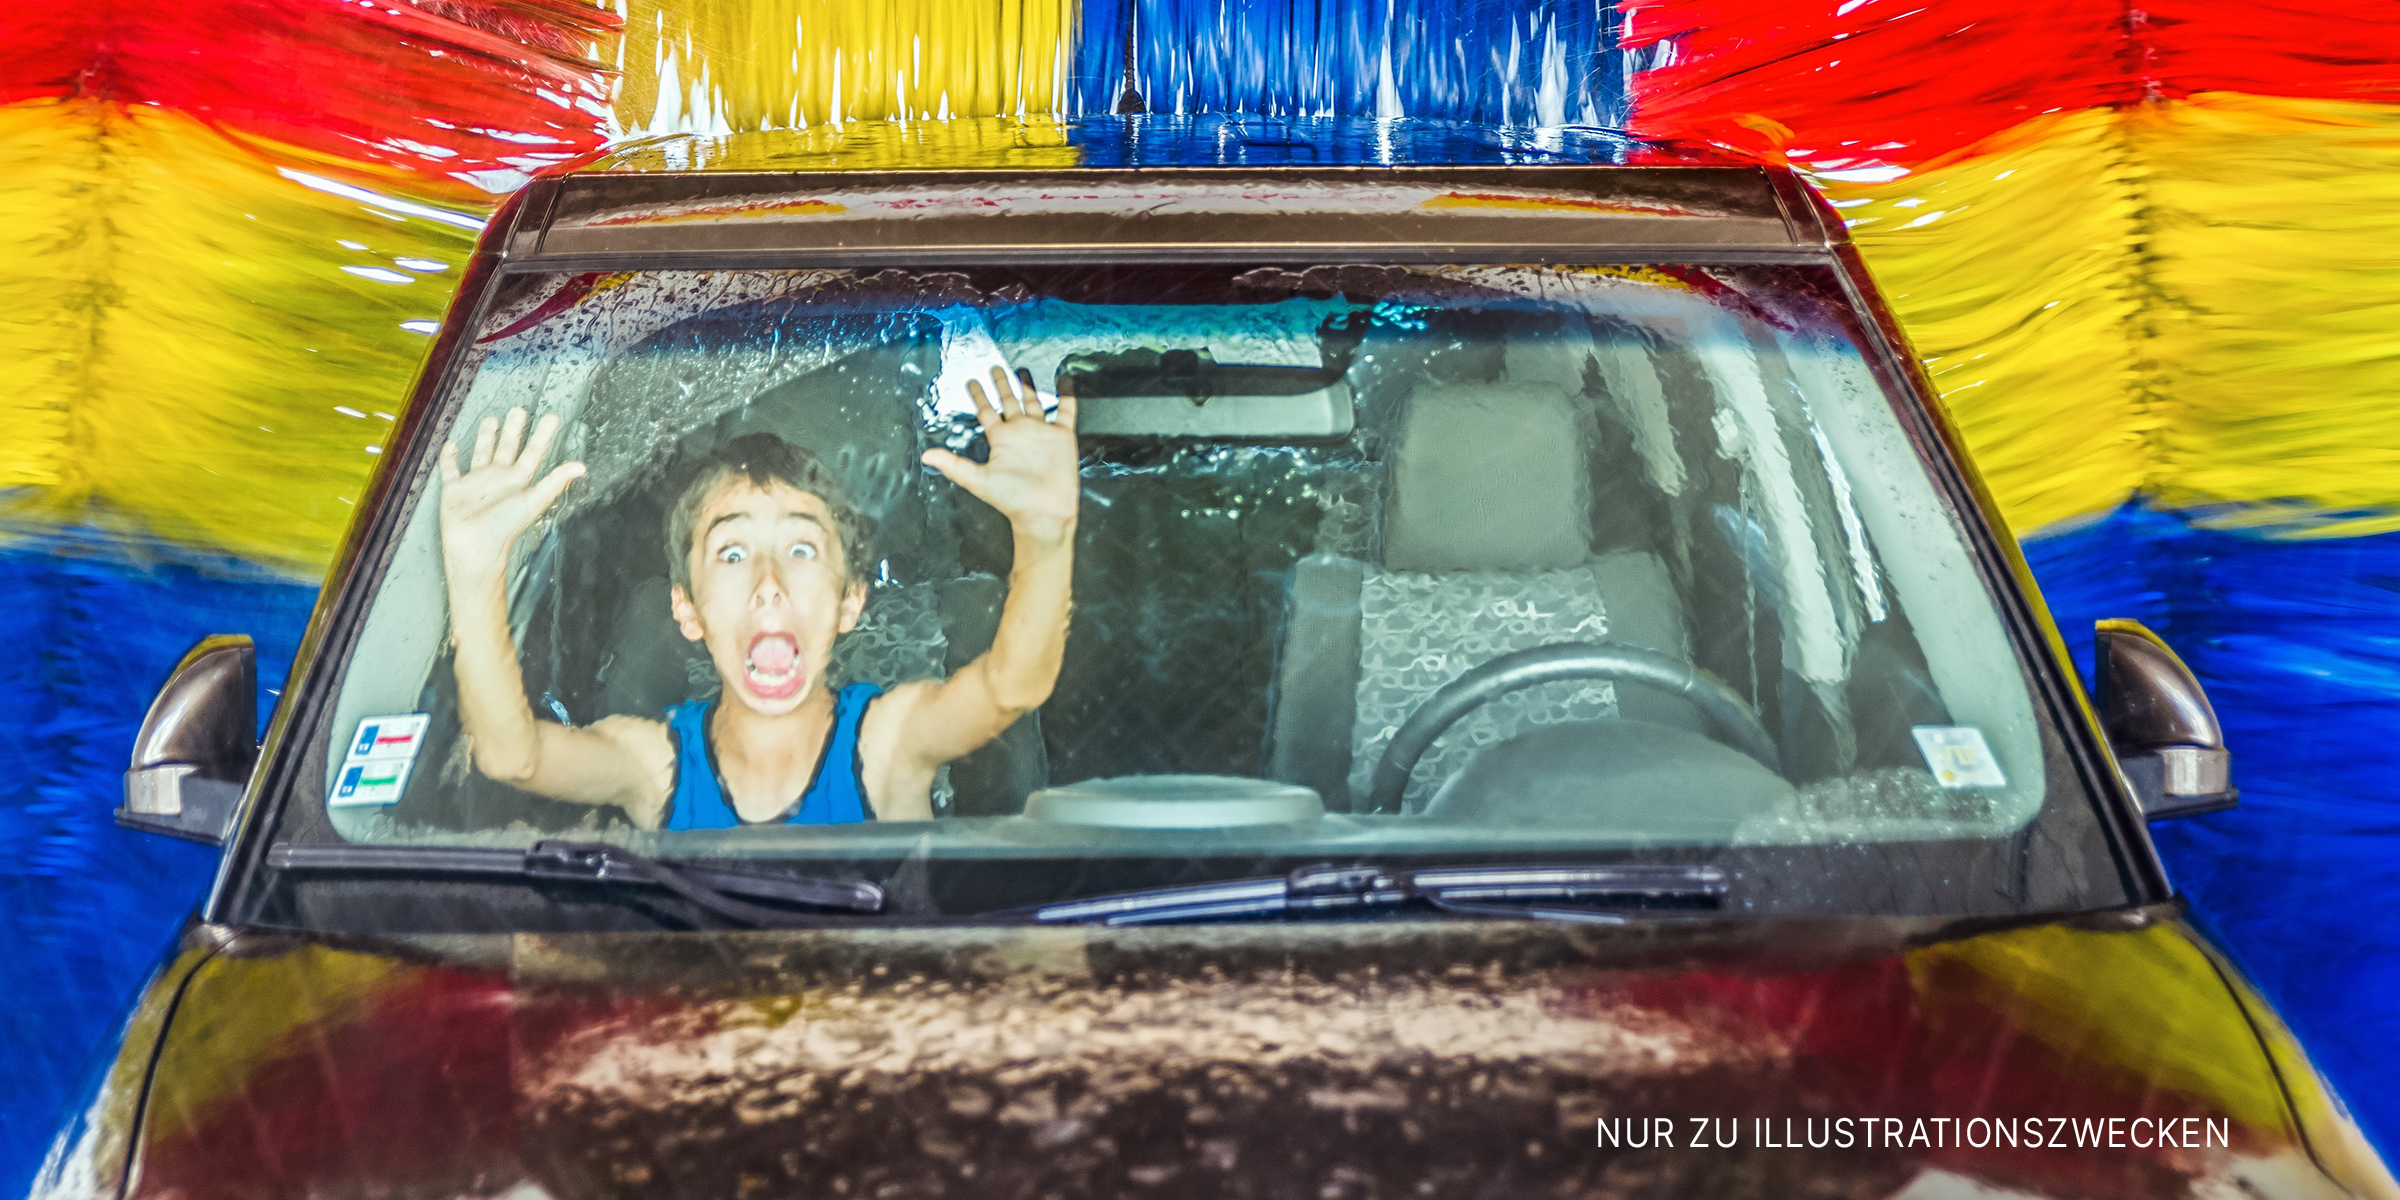 Junge in einem Auto in einer automatischen Autowaschanlage | Quelle: Shutterstock